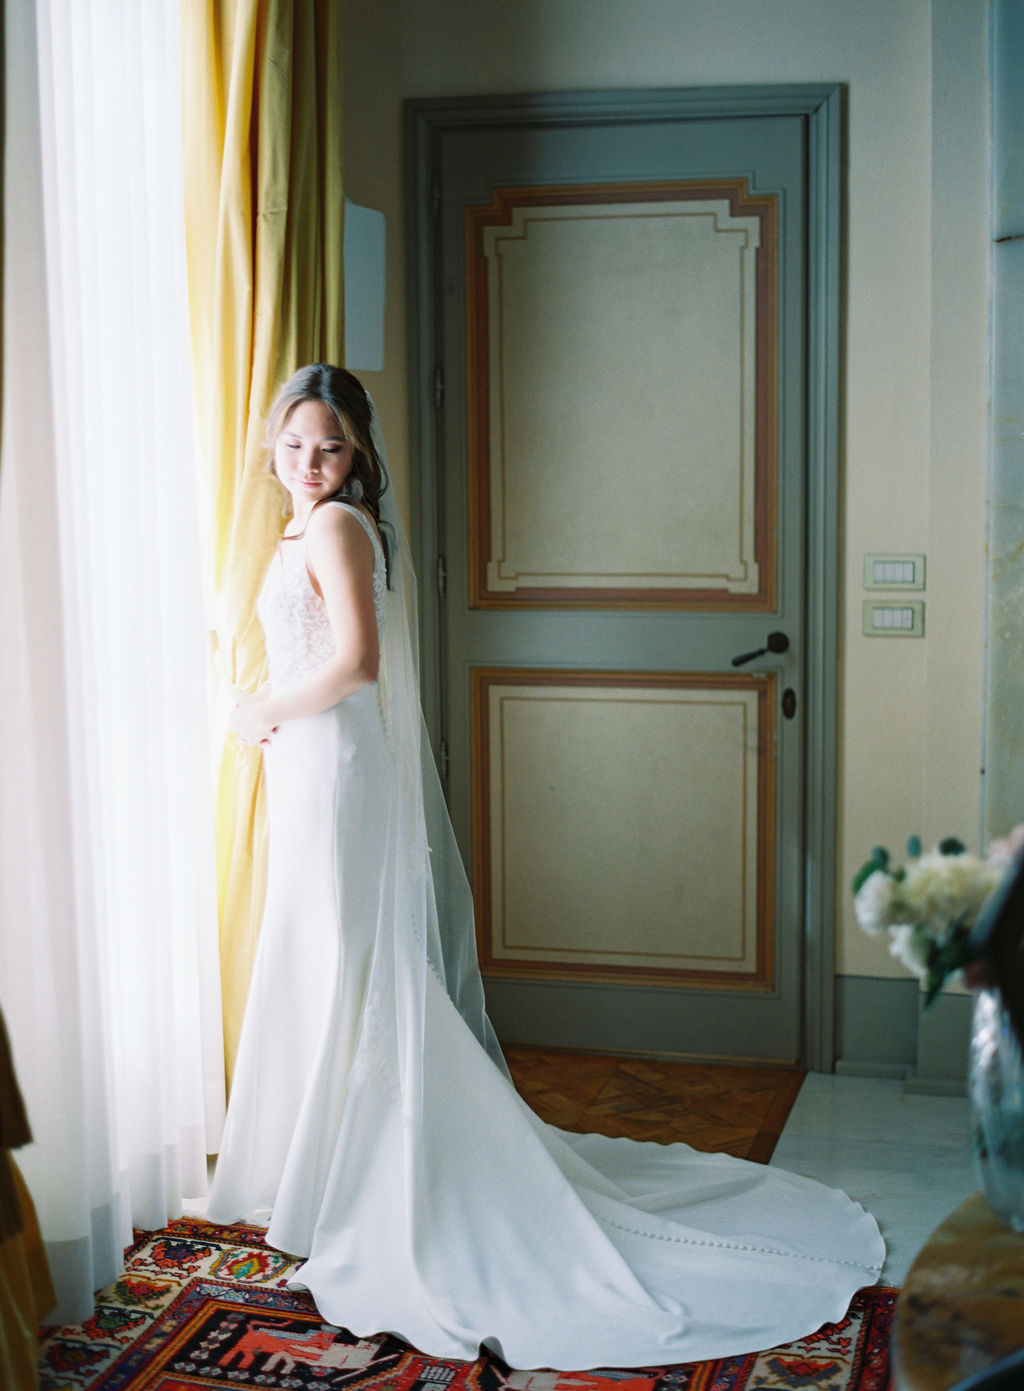 Villa Mangiacane Wedding, Tuscany Wedding, Tuscany Wedding Venue, Anna Gianfrate Photography